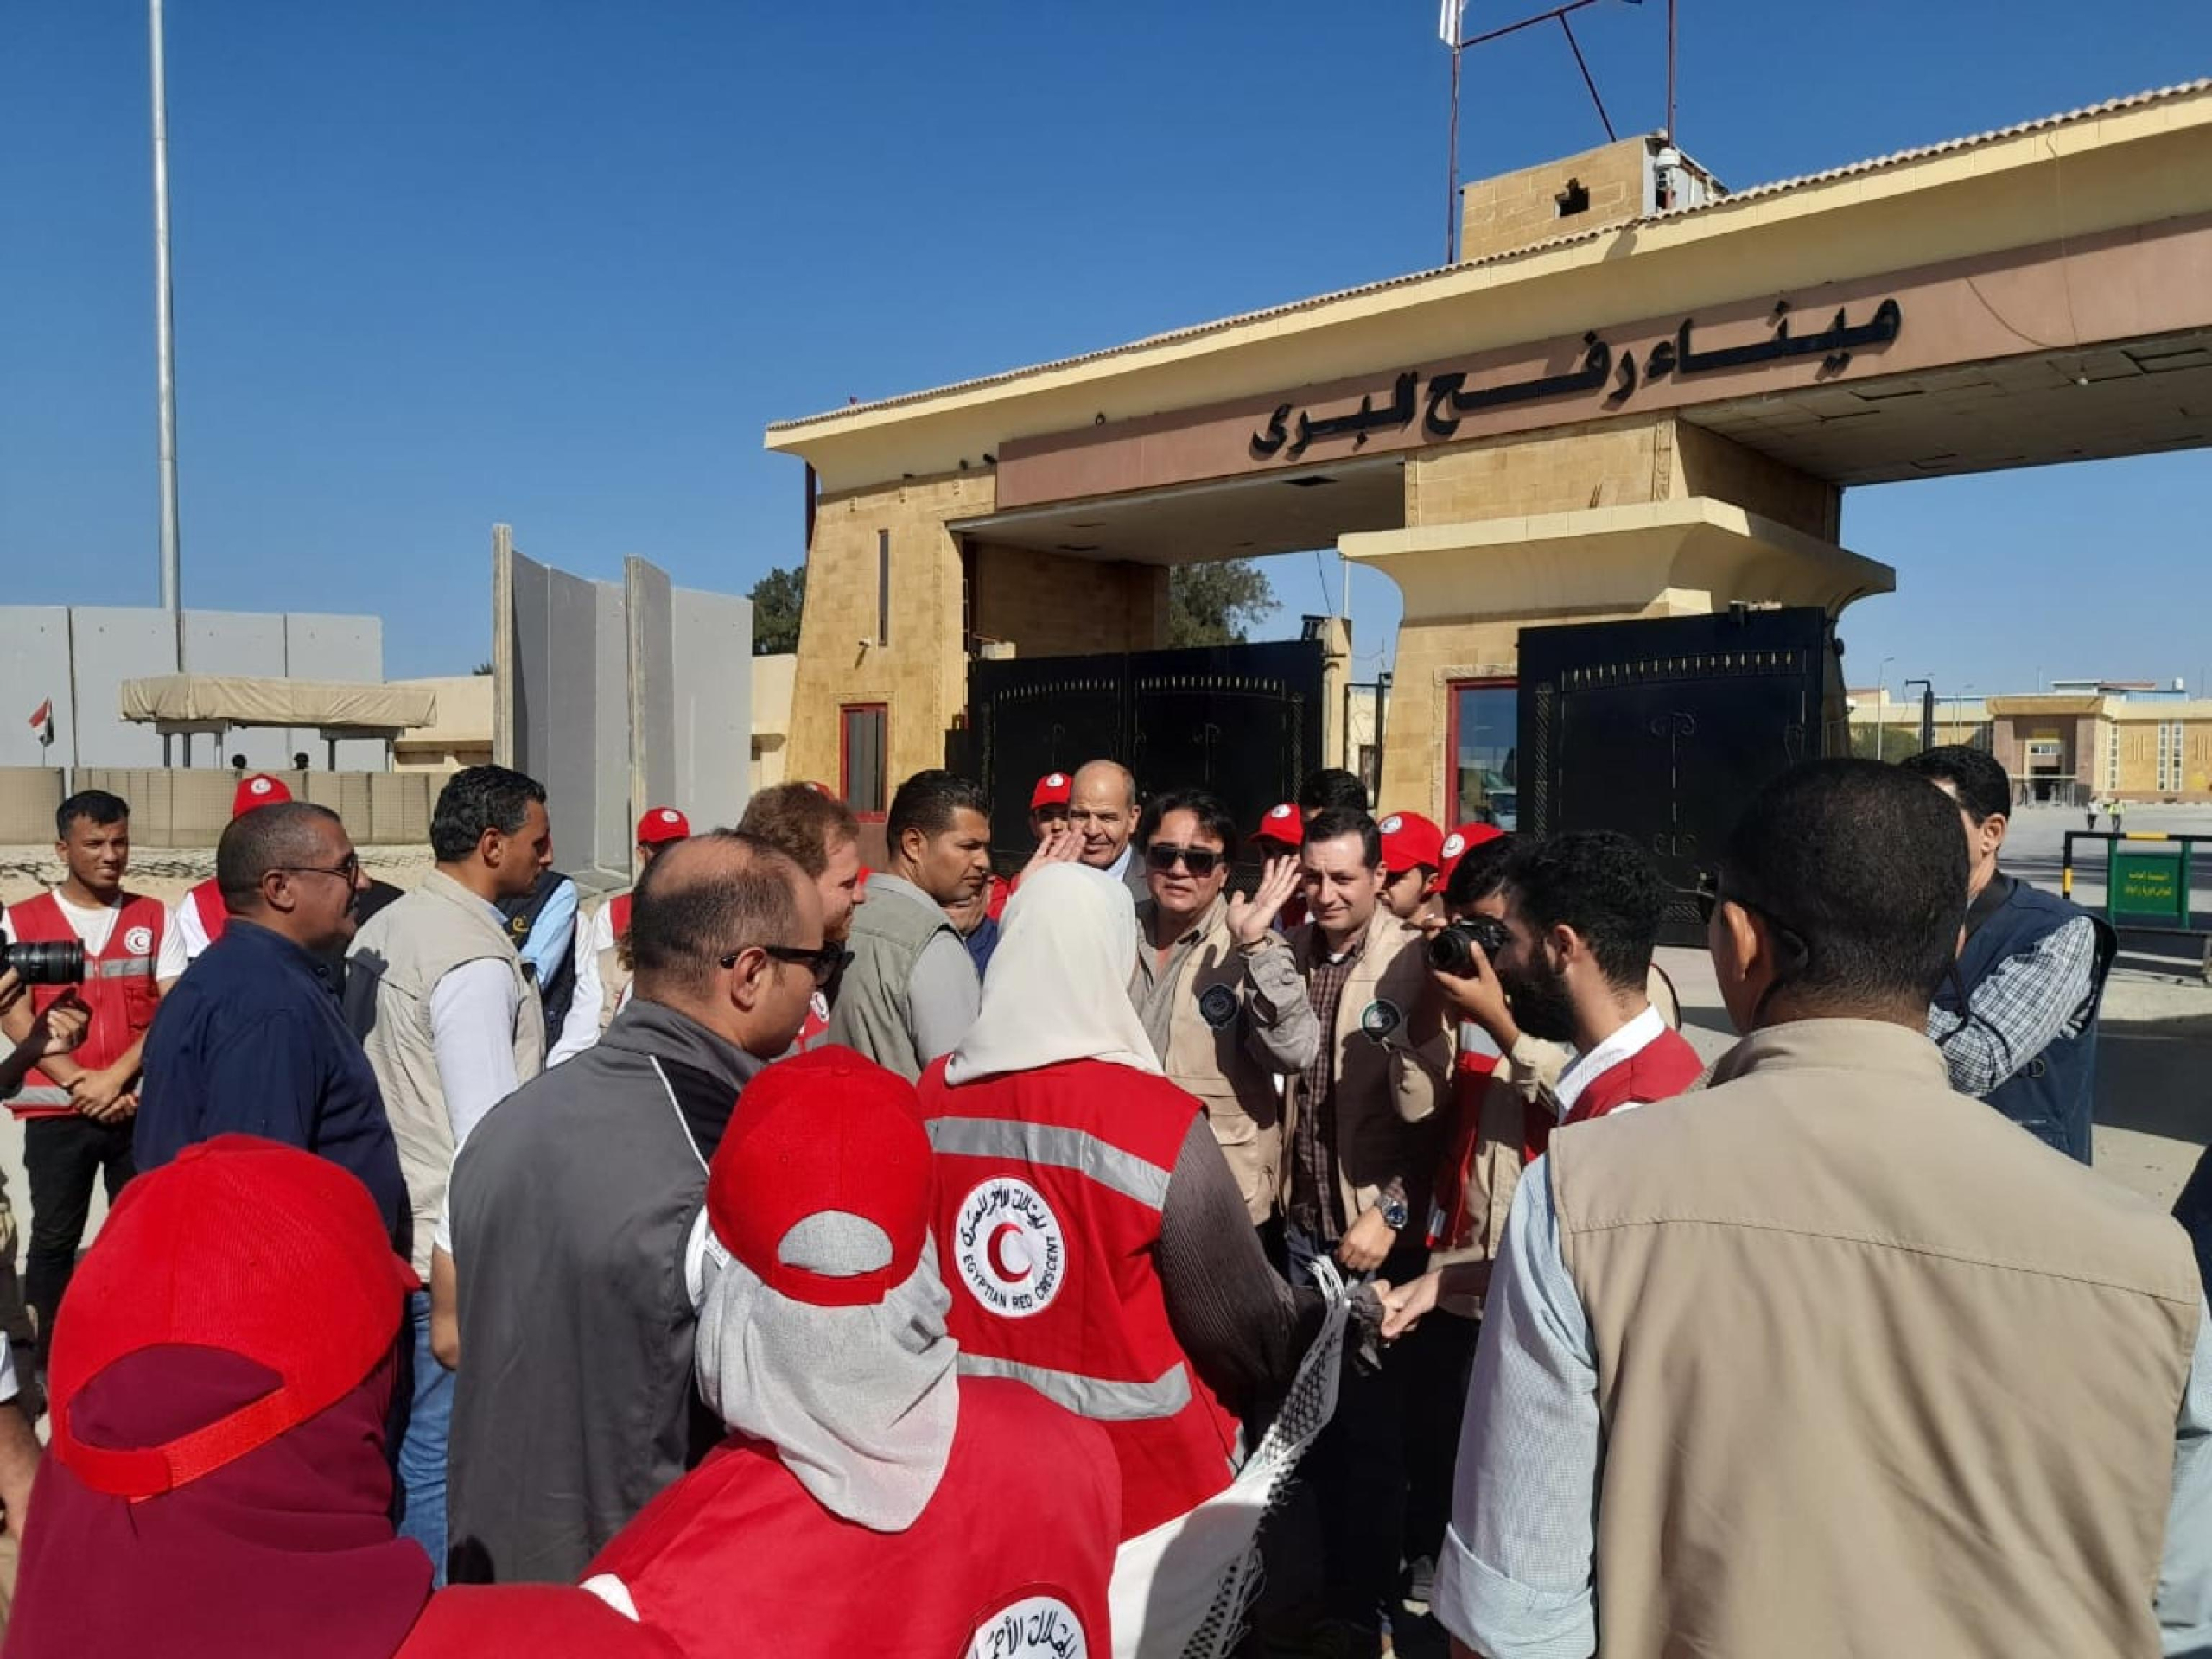 Nevine Al-Qabbaj, ministro della Solidarietà Sociale, accompagnato da Hisham Al-Kholy, vicegovernatore del Nord Sinai, ha ispezionato i camion umanitari davanti al valico di Rafah nel Nord Sinai e i magazzini degli aiuti nella città di Al-Arish e hanno visitato i palestinesi feriti. Il ministro ha confermato la consegna di circa 30.000 tonnellate di aiuti umanitari e di soccorso alla Striscia di Gaza, di cui 16.000 tonnellate dallo Stato egiziano, 10.000 tonnellate da organizzazioni e agenzie internazionali e 4.000 tonnellate da diversi paesi arabi e stranieri. ANSA/UFFICIO DELL'INFORMAZIONE EGIZIANO 